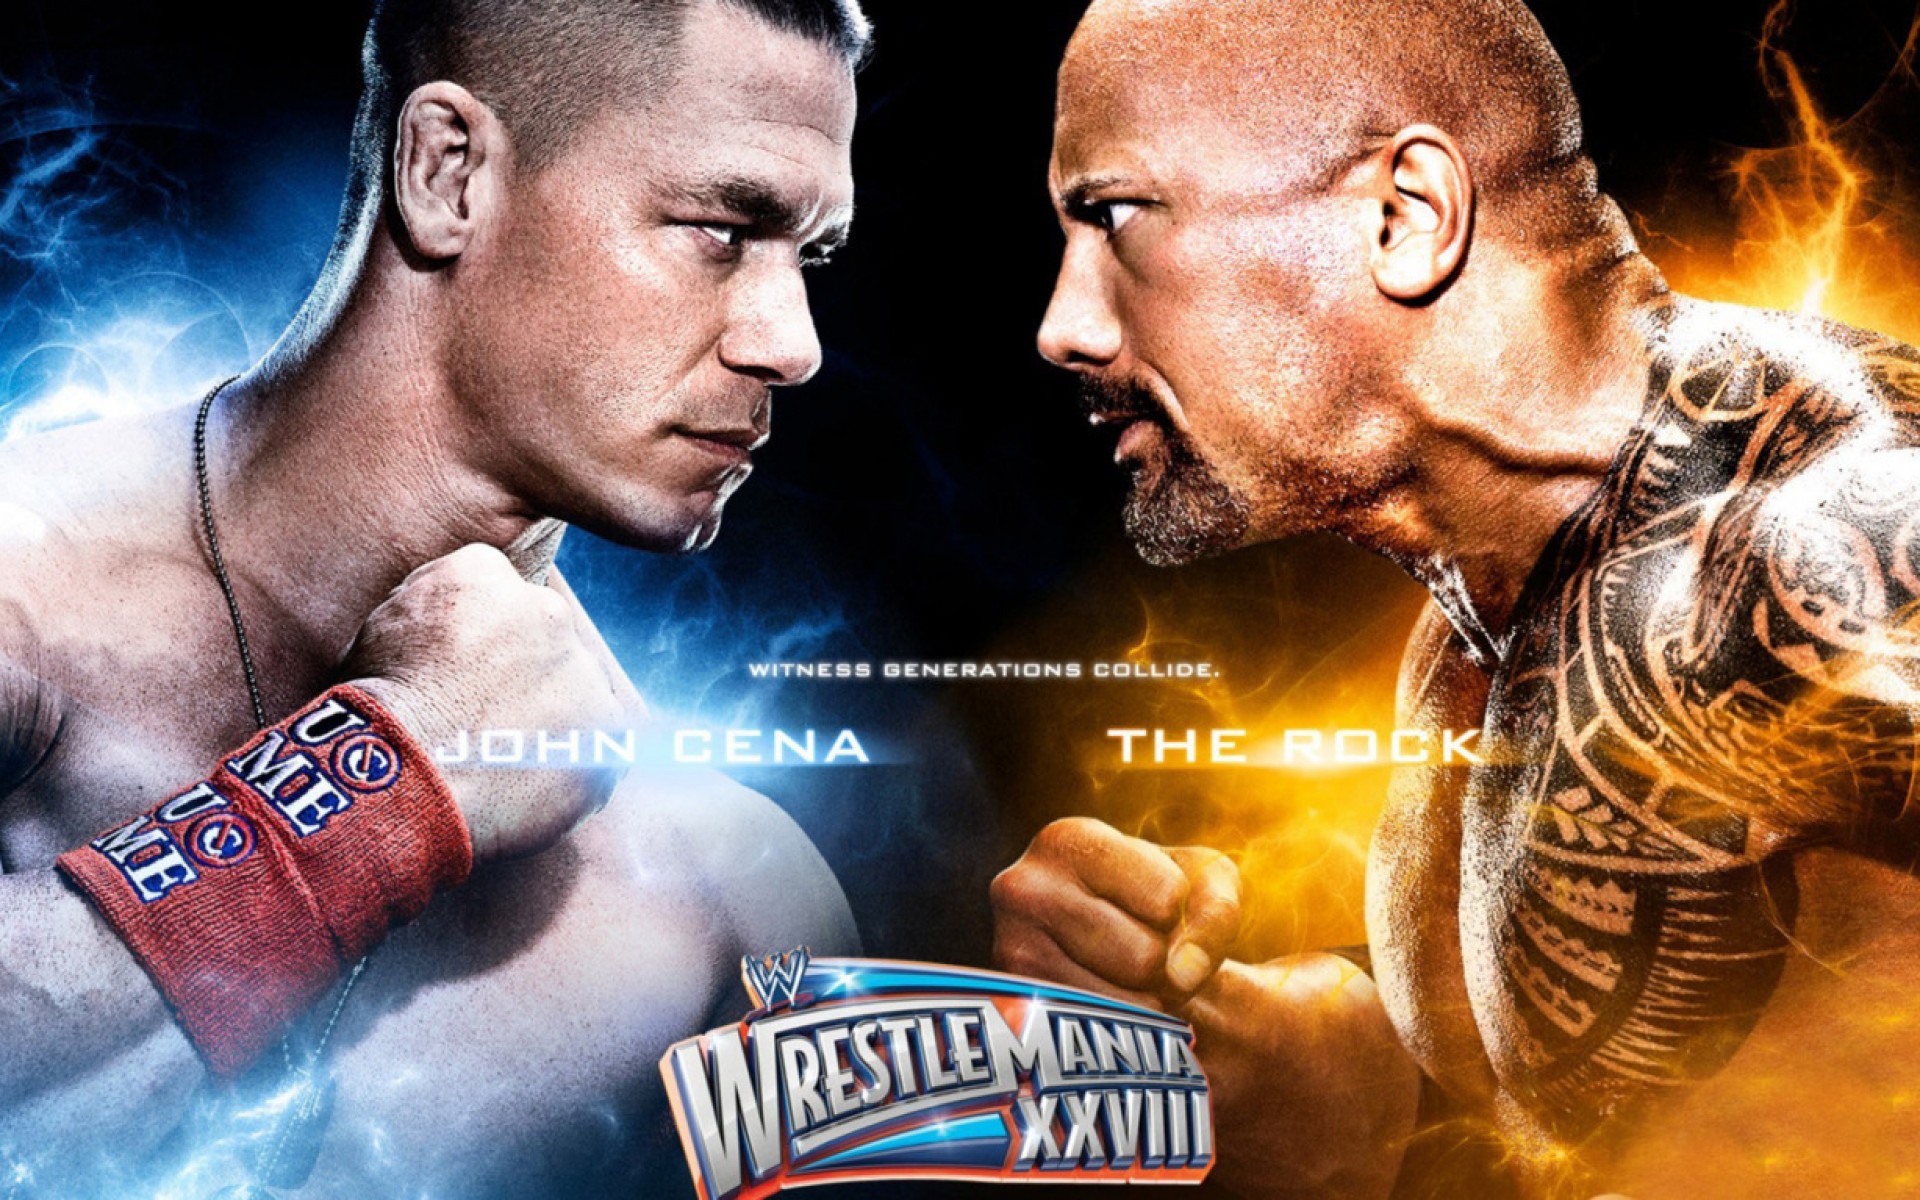 John Cena Hd Images, John Cena Hd Wallpapers - John Cena Dan The Rock - HD Wallpaper 